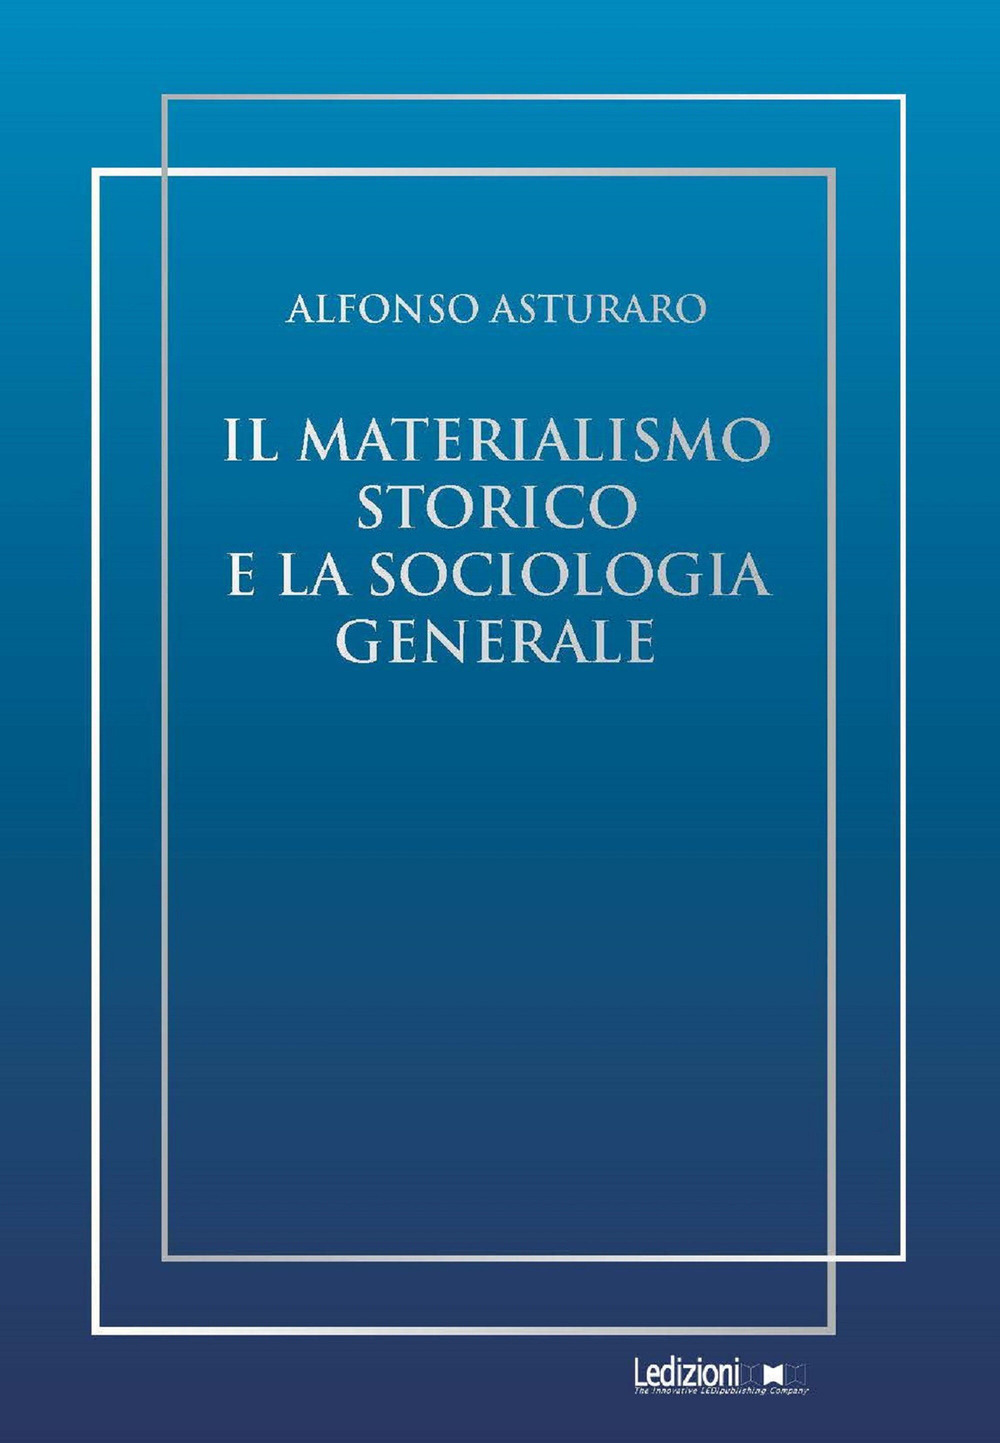 Image of Il materialismo storico e la sociologia generale